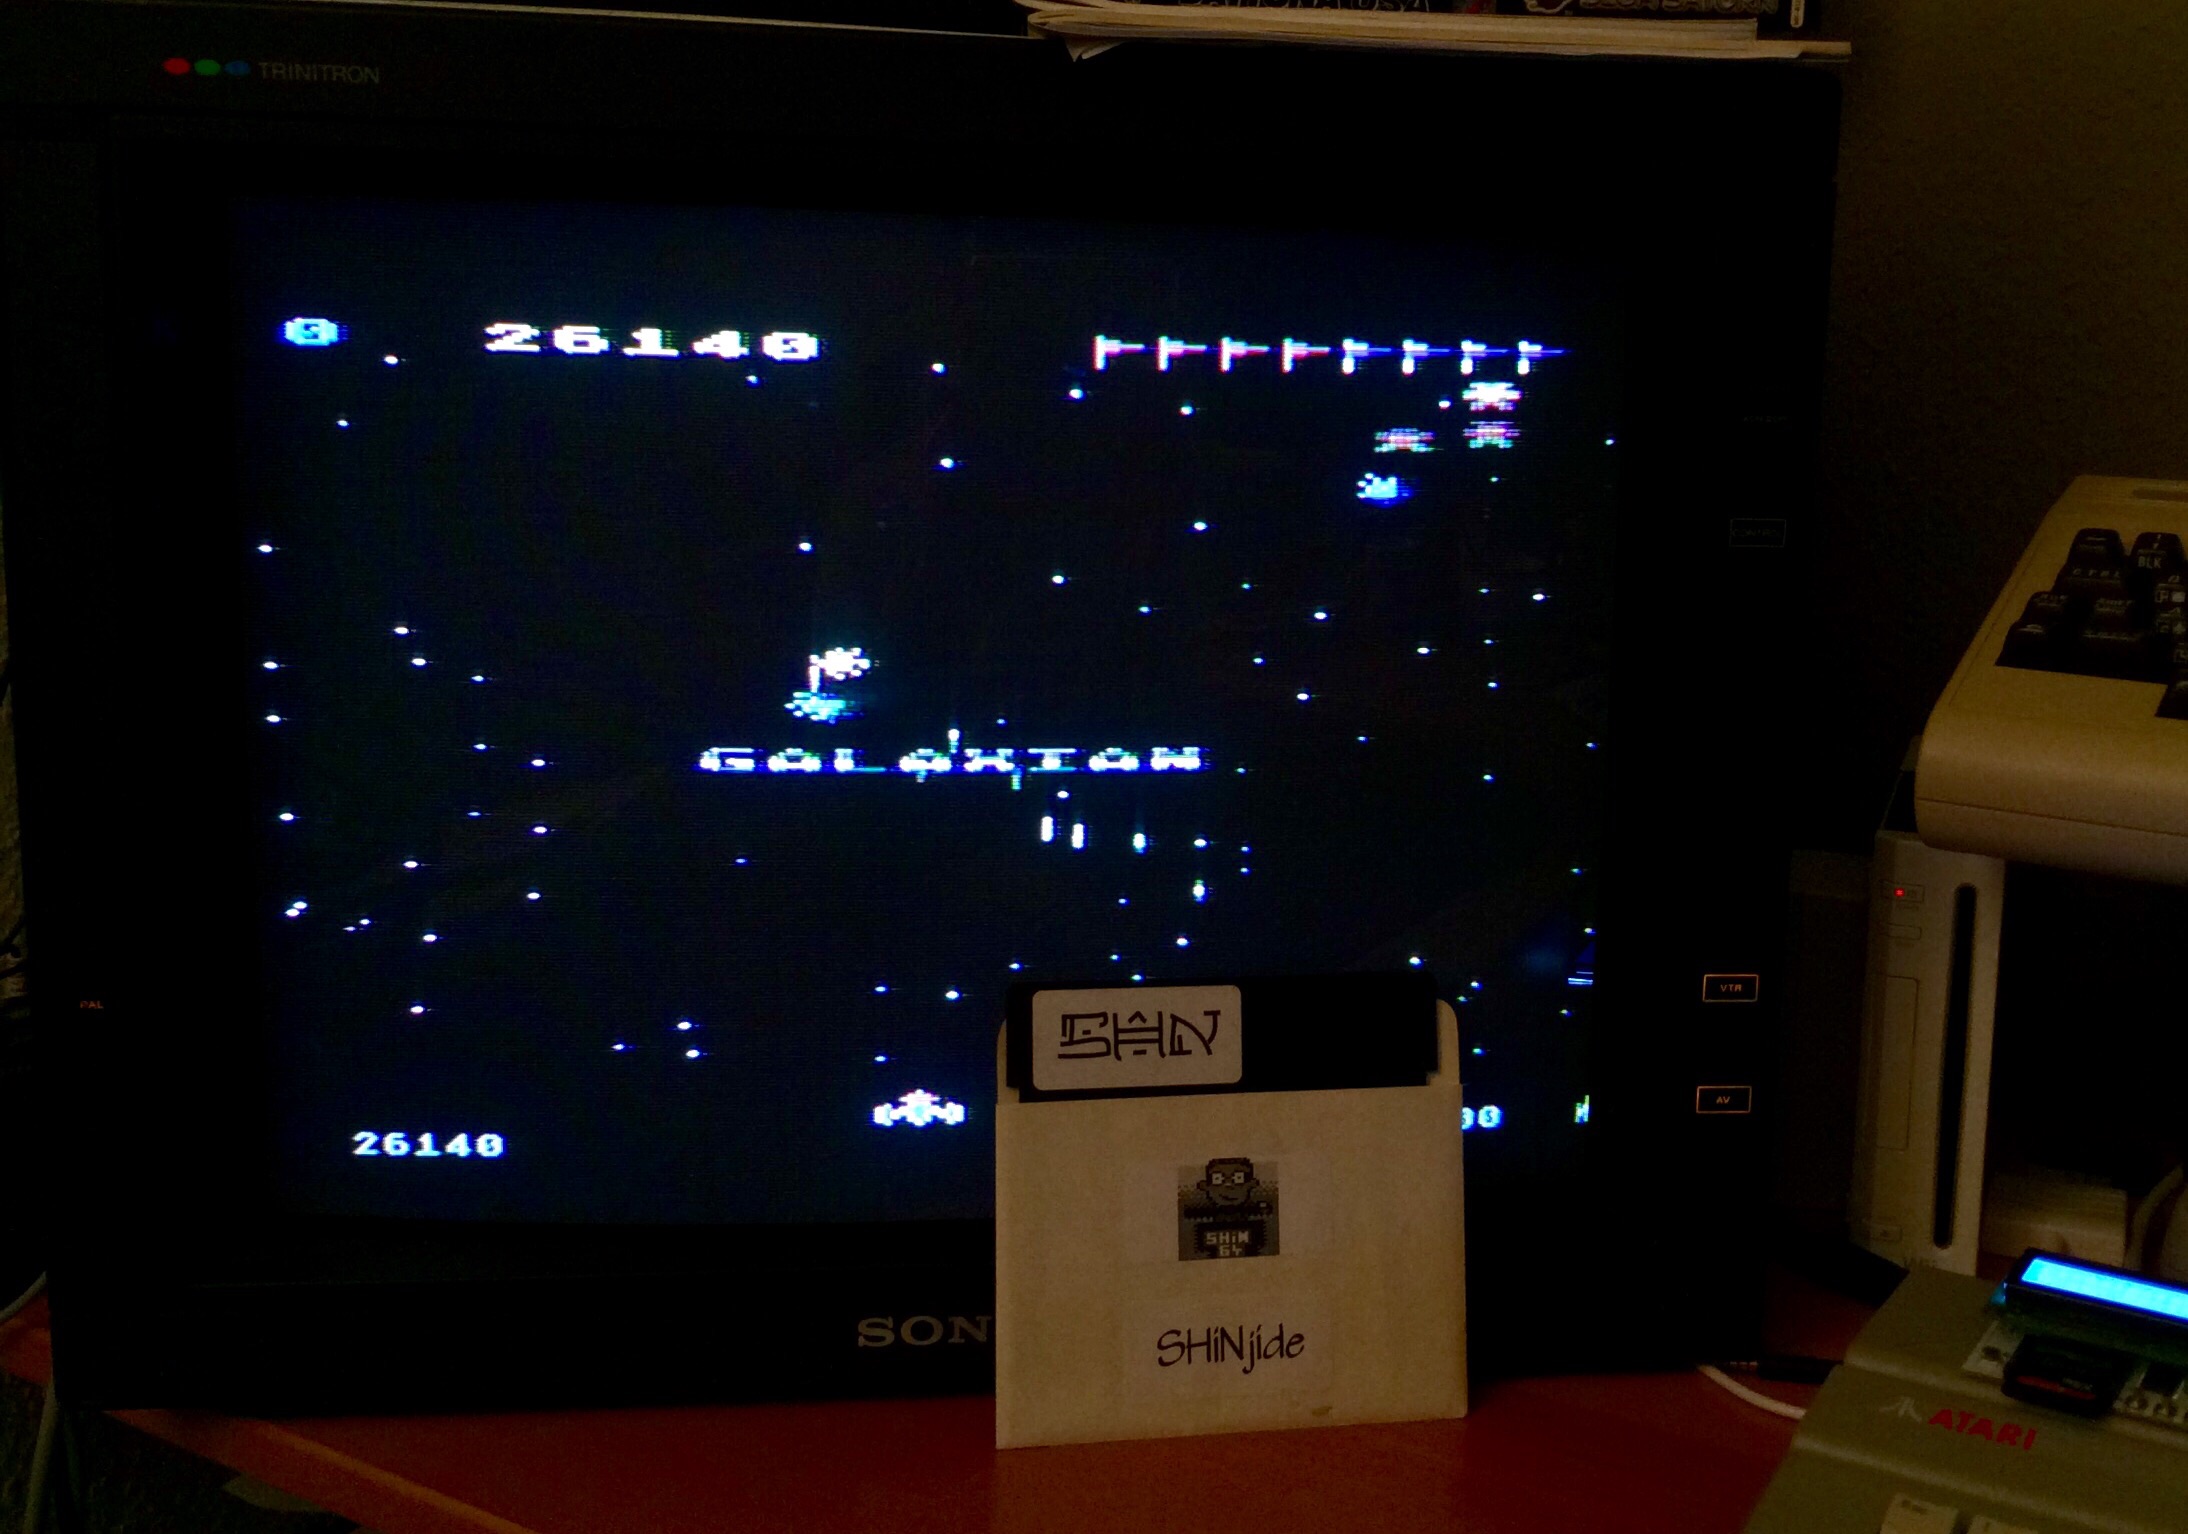 SHiNjide: Galaxian (Atari 400/800/XL/XE) 26,140 points on 2015-01-23 16:26:49